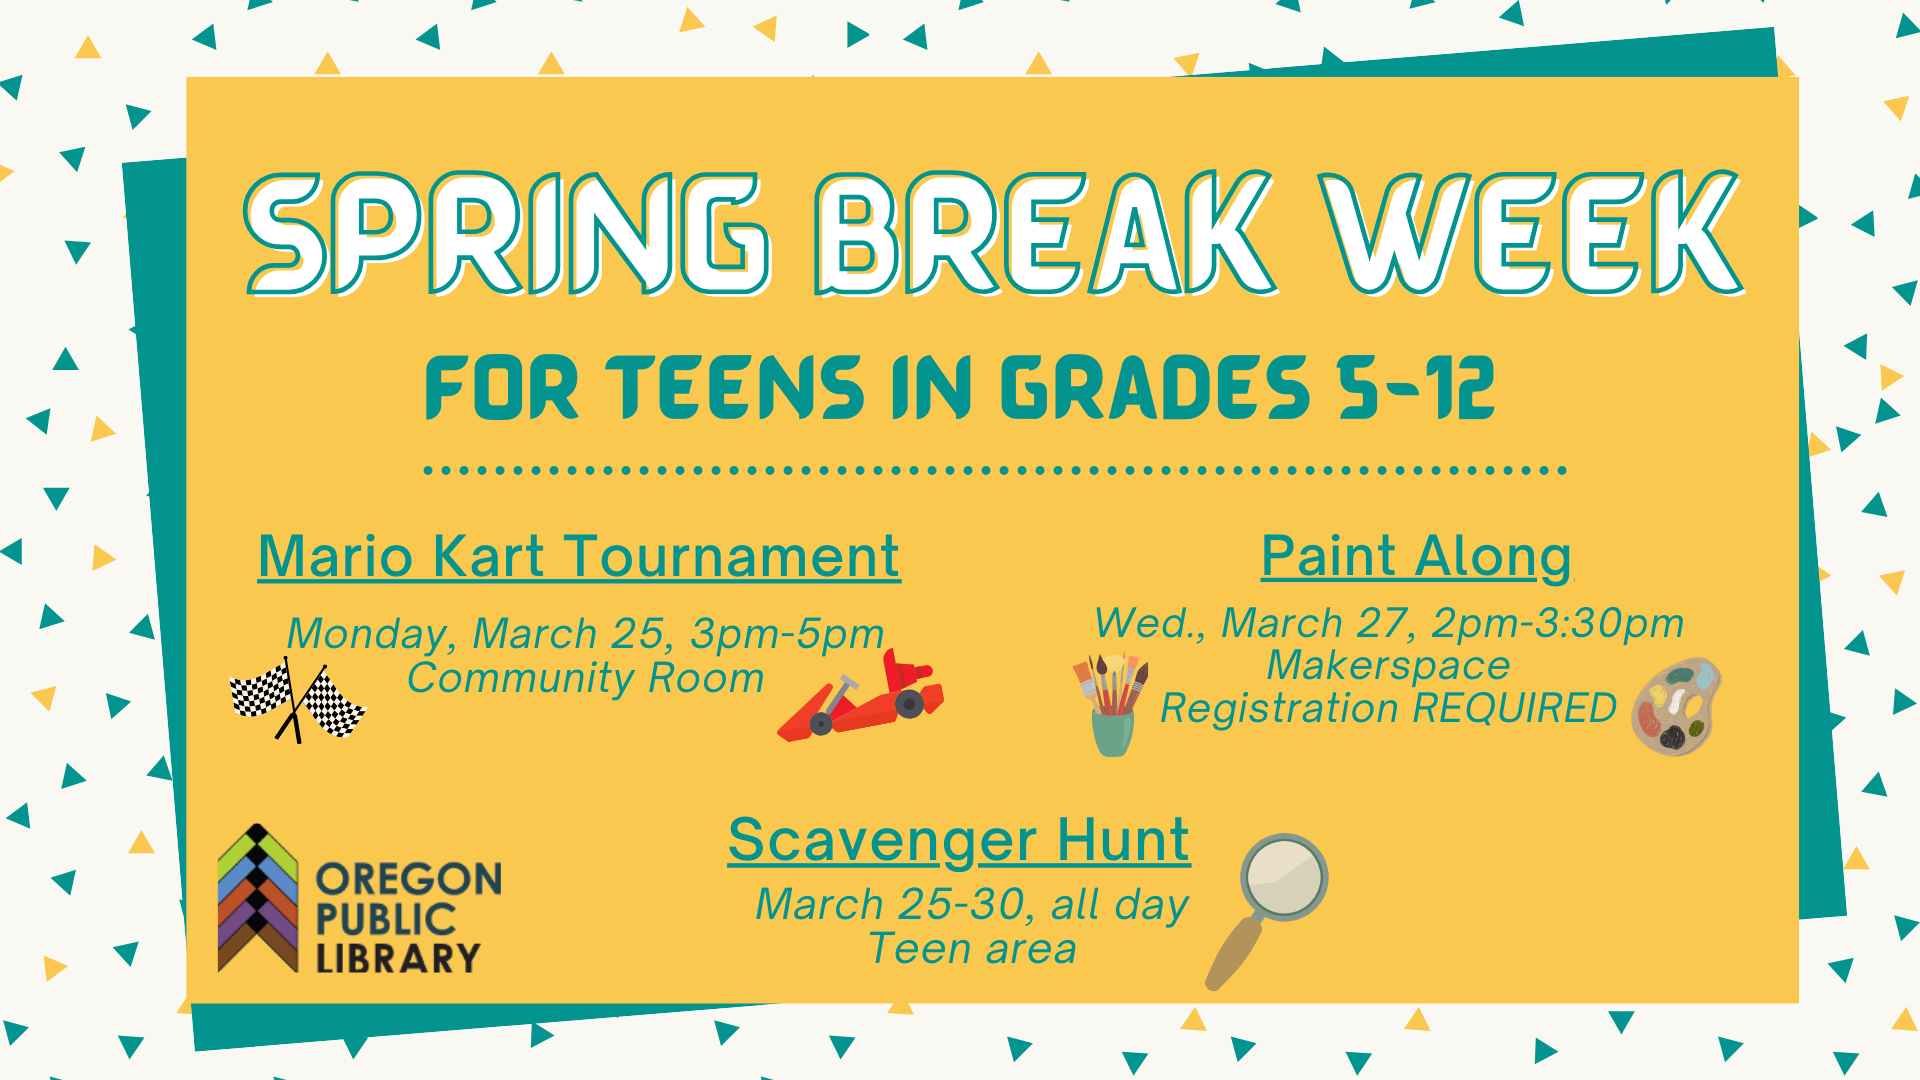 Spring Break Week for teens in grades 5-12